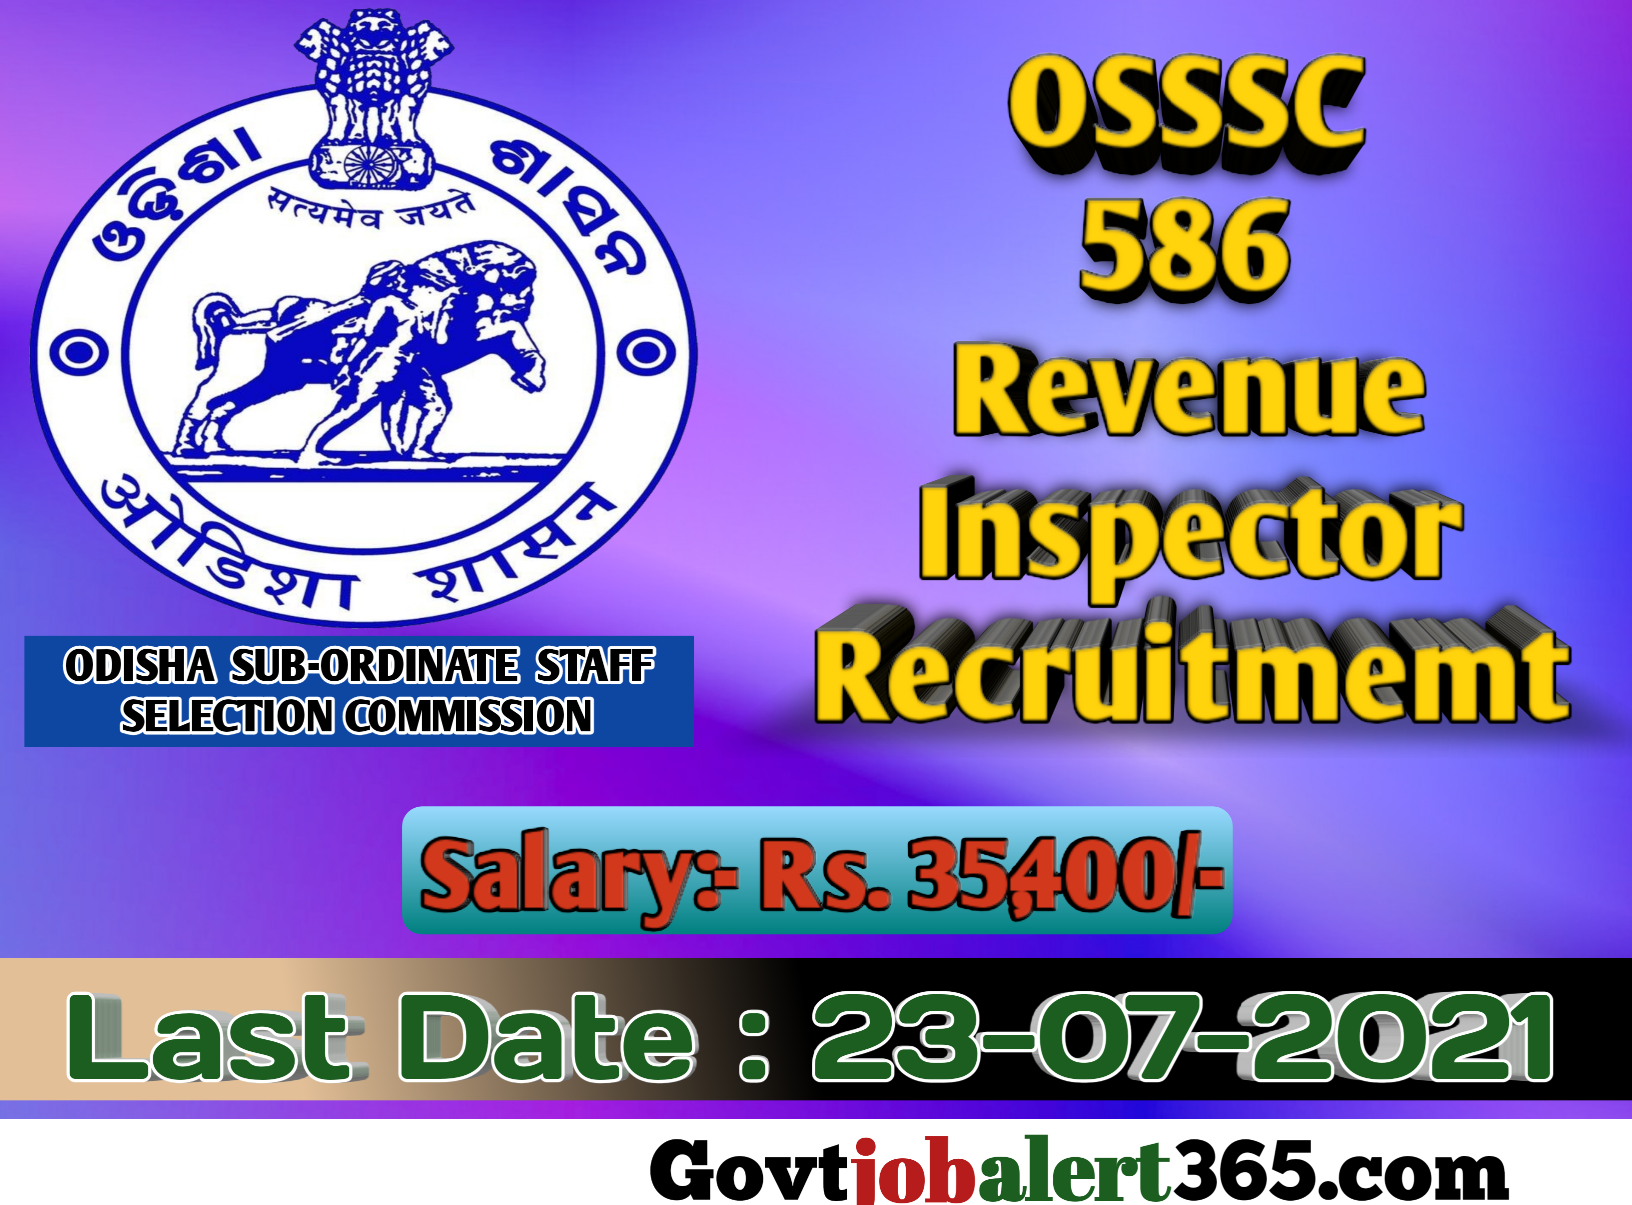 OSSSC Revenue Inspector Recruitment 2021